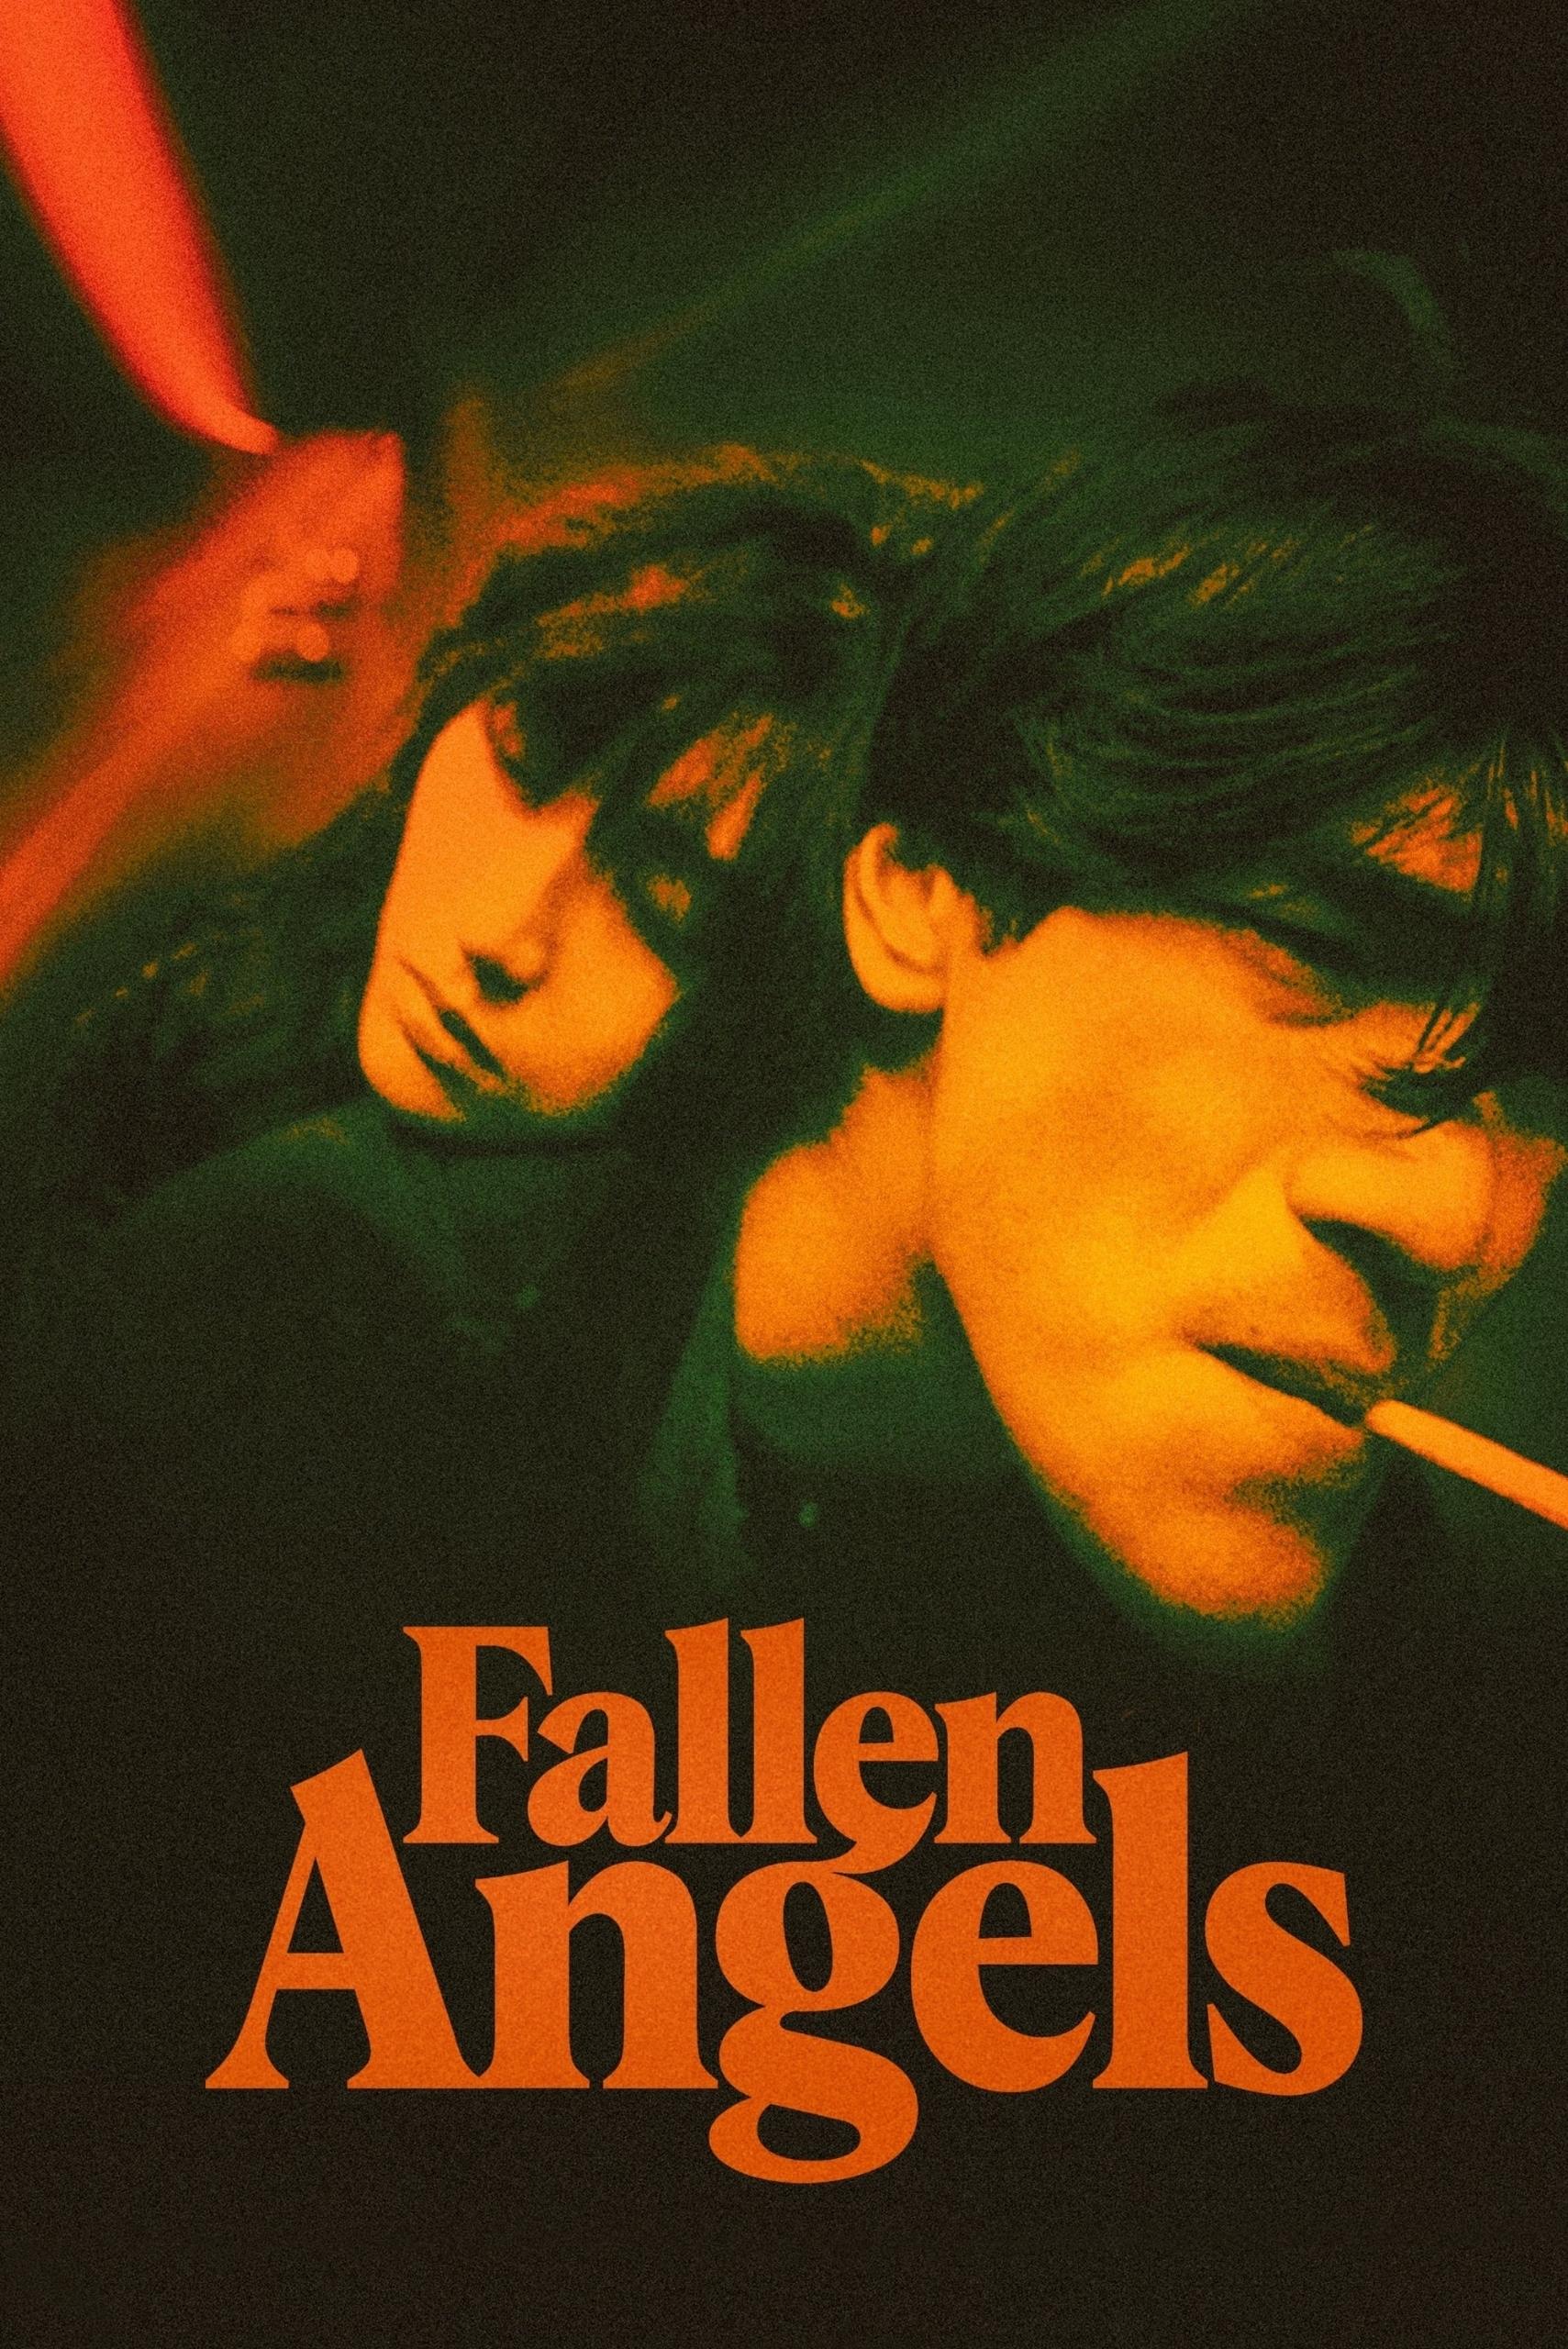 poster phim Hồng Kông Fallen Angels do Vương Gia Vệ làm đạo diễn